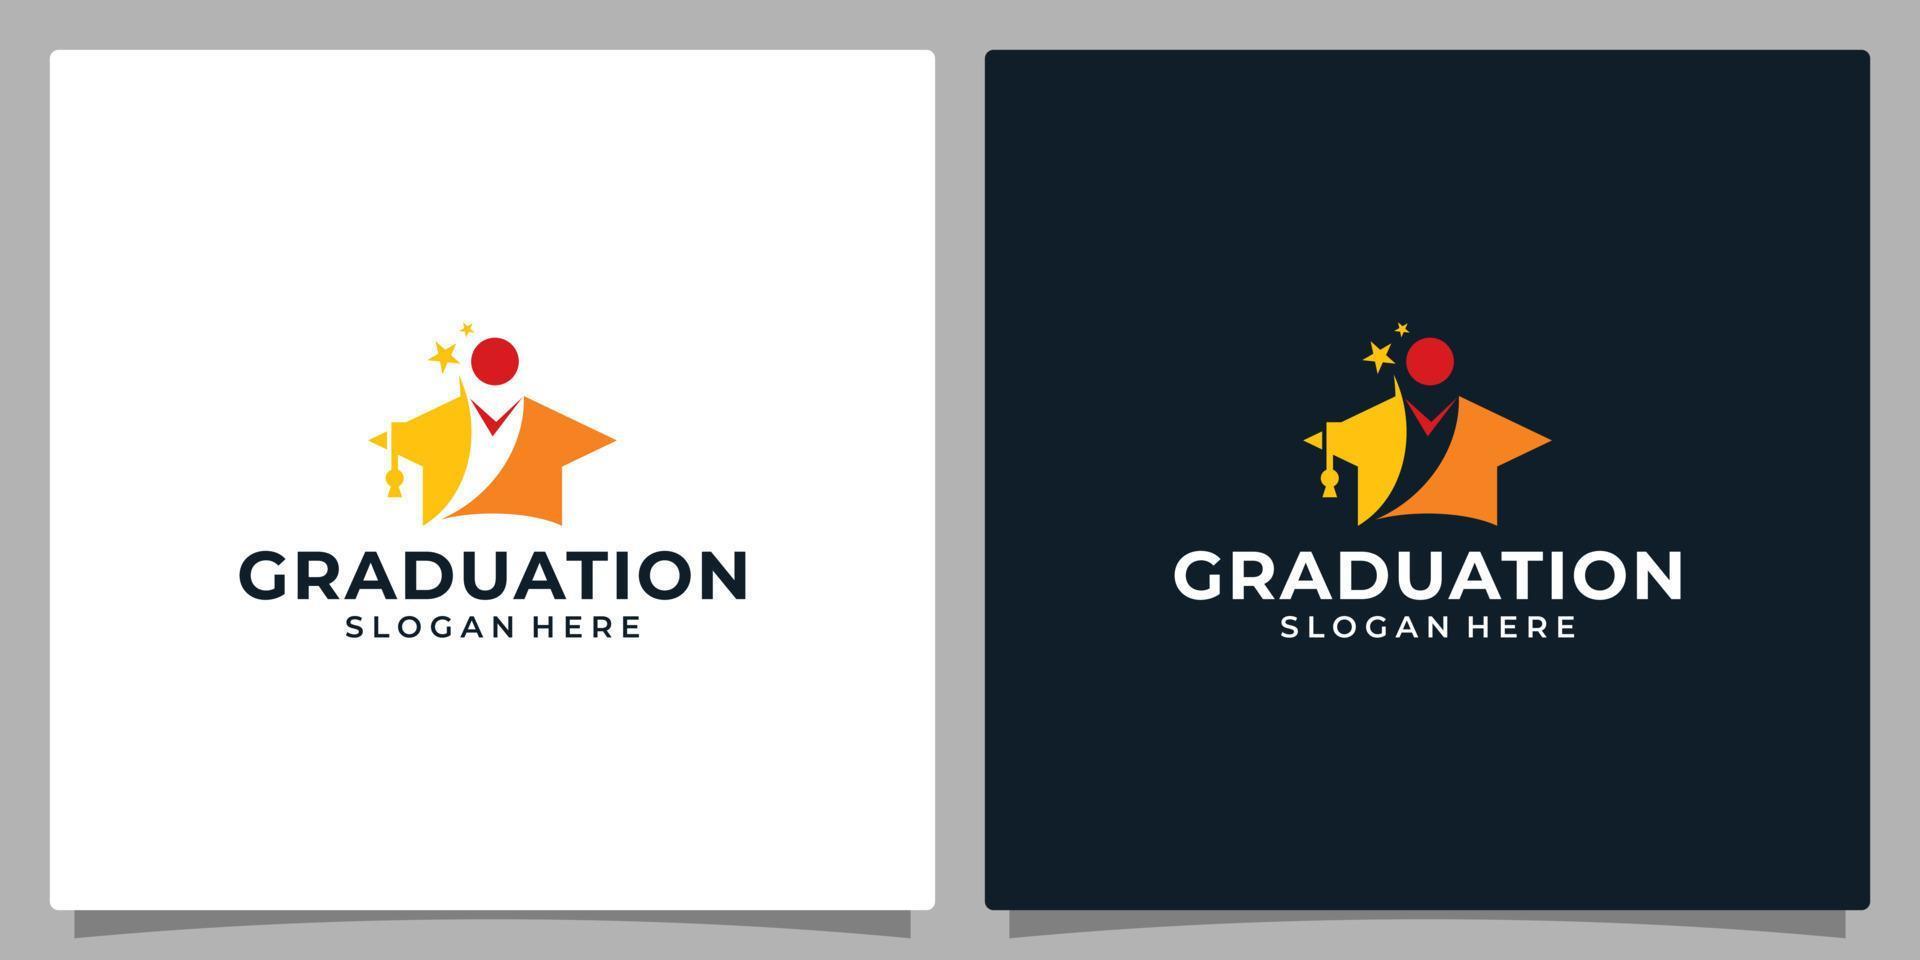 College, Graduation cap, Campus, Education logo design and Happy kid logo vector illustration graphic design.